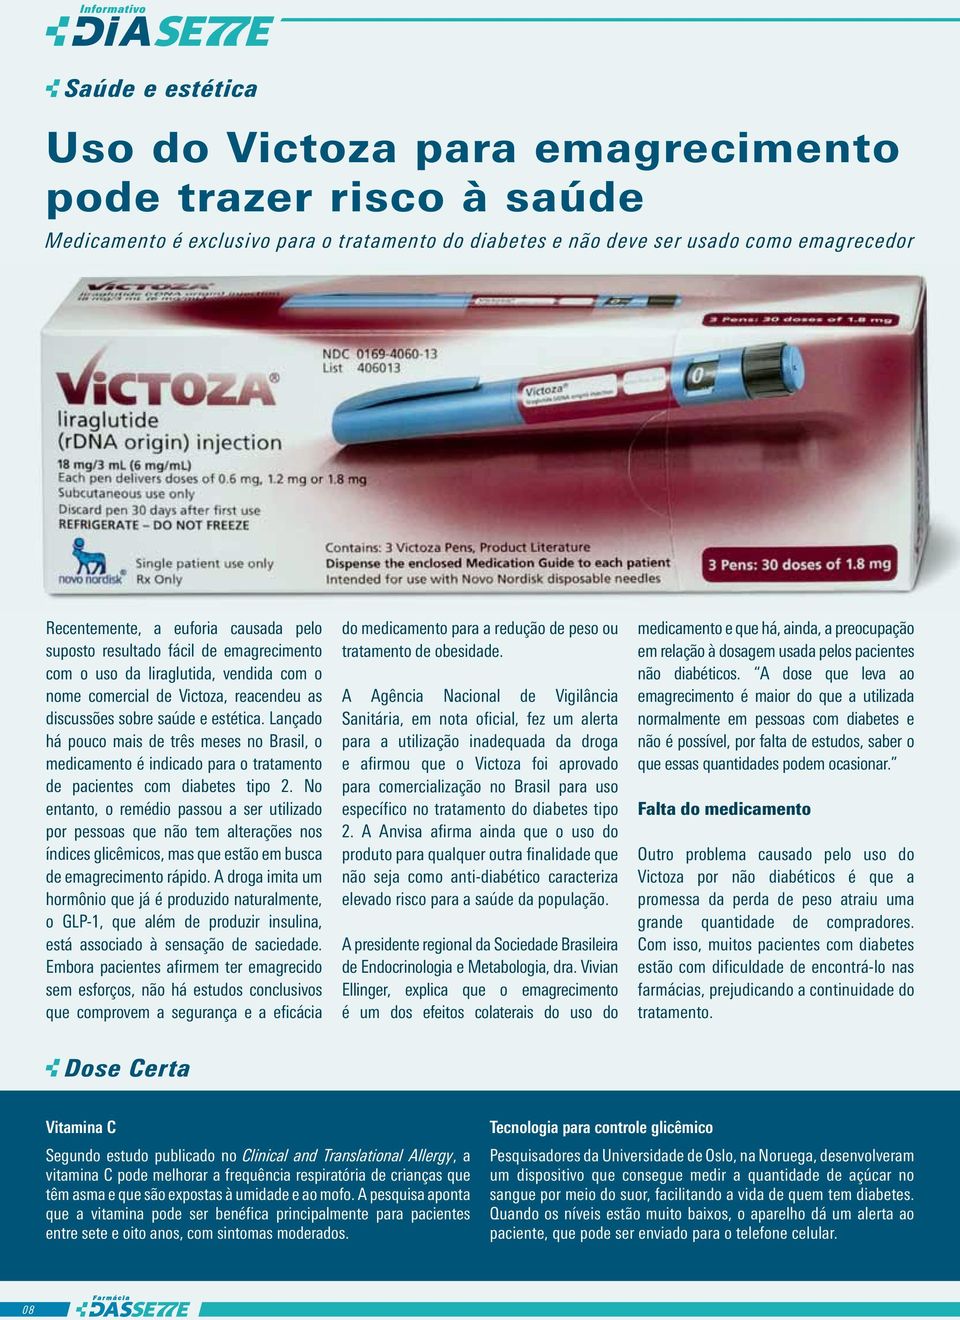 Lançado há pouco mais de três meses no Brasil, o medicamento é indicado para o tratamento de pacientes com diabetes tipo 2.